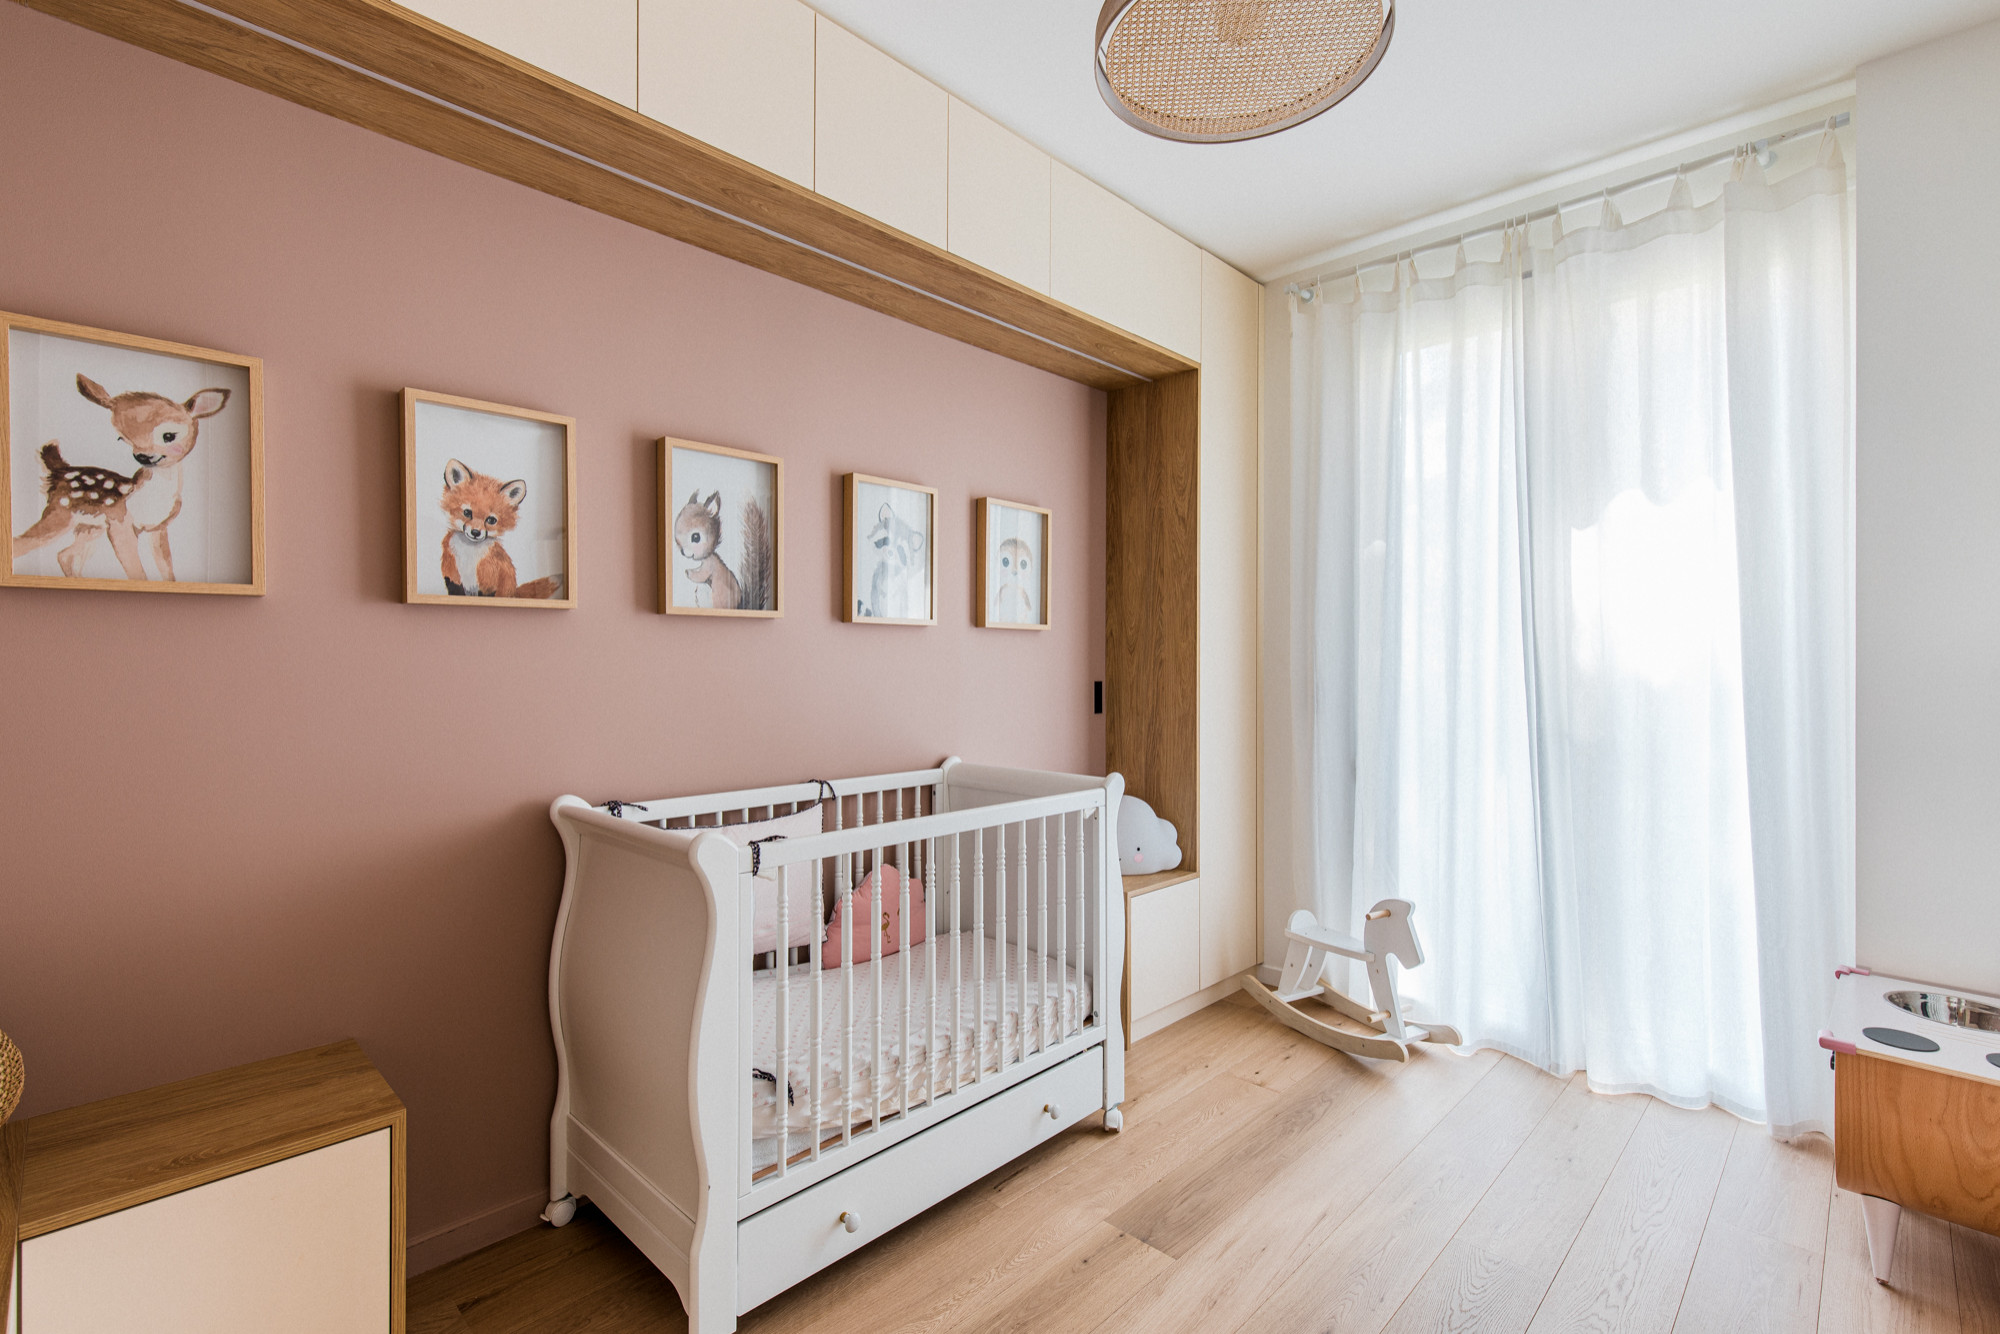 Décoration murale pour la chambre de bébé – idées déco, Autour de bébé